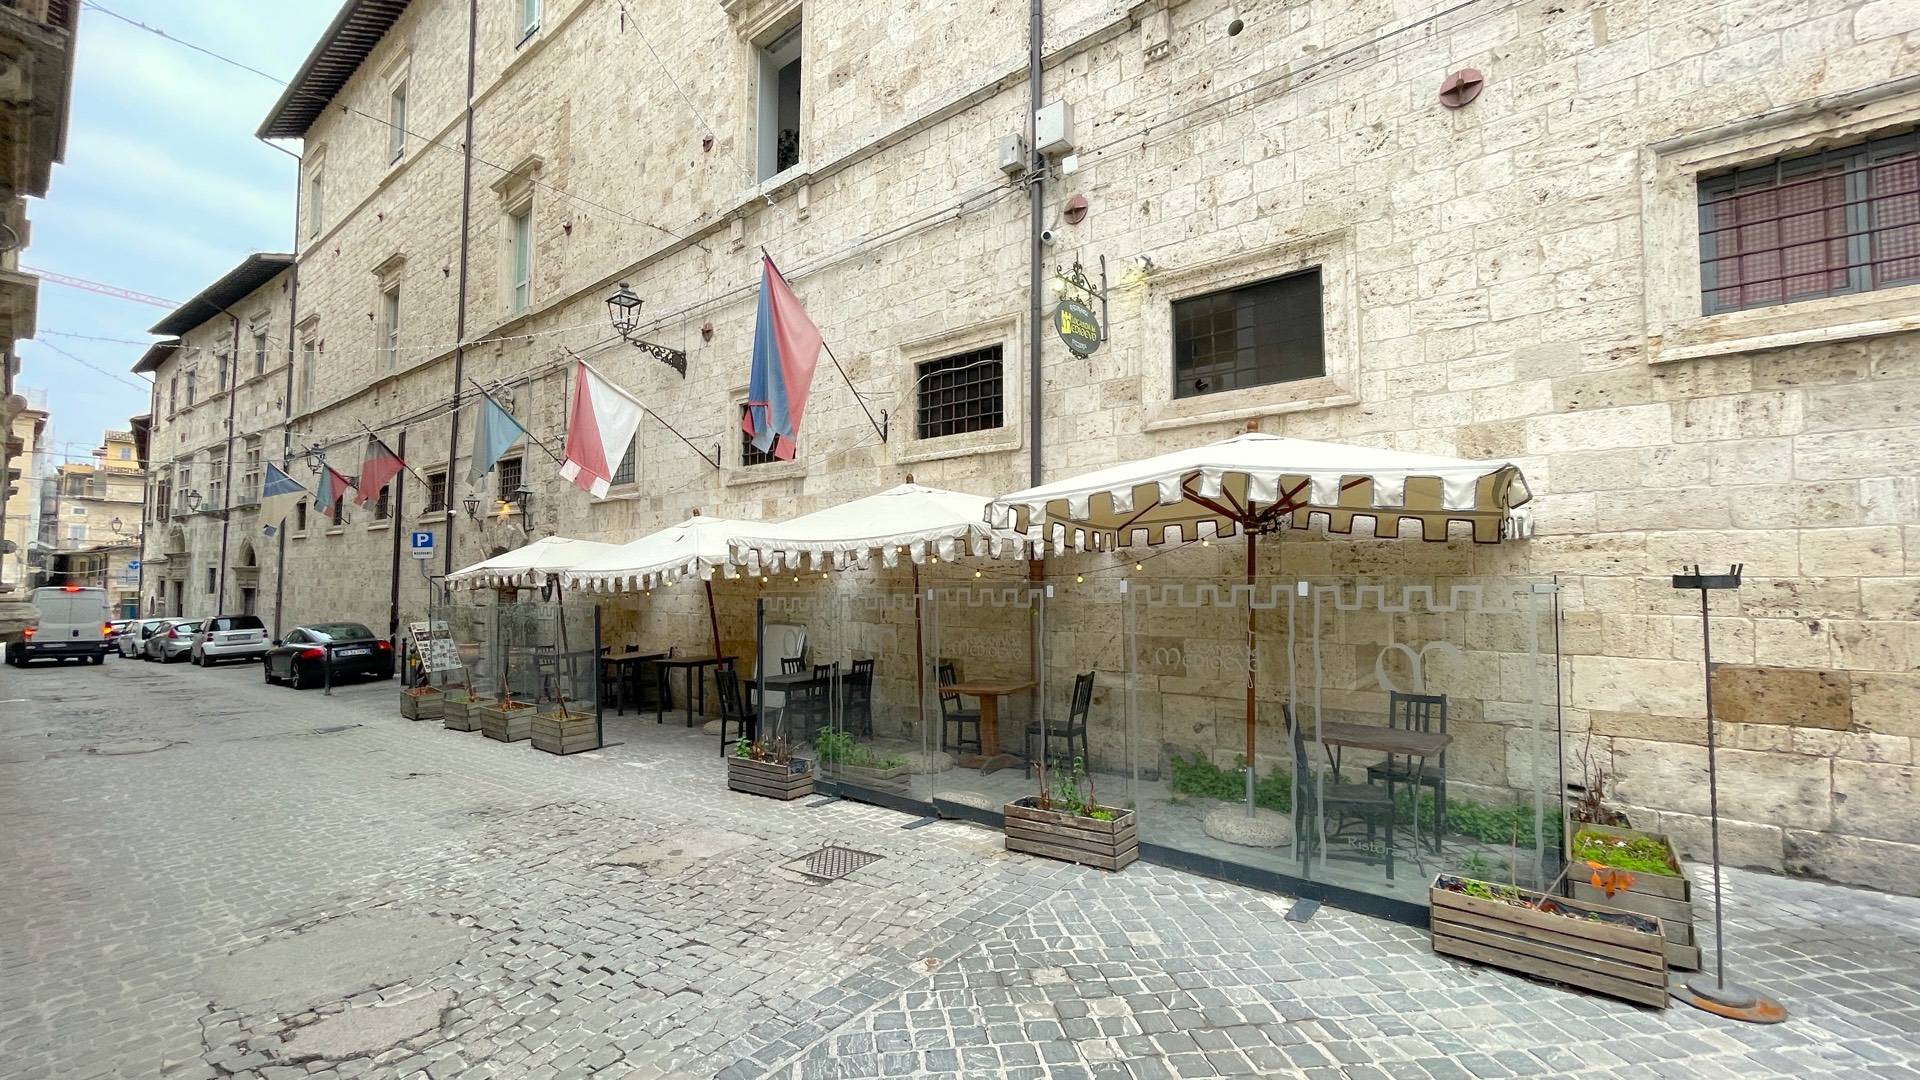 Attivit commerciale in vendita, Ascoli Piceno centro storico